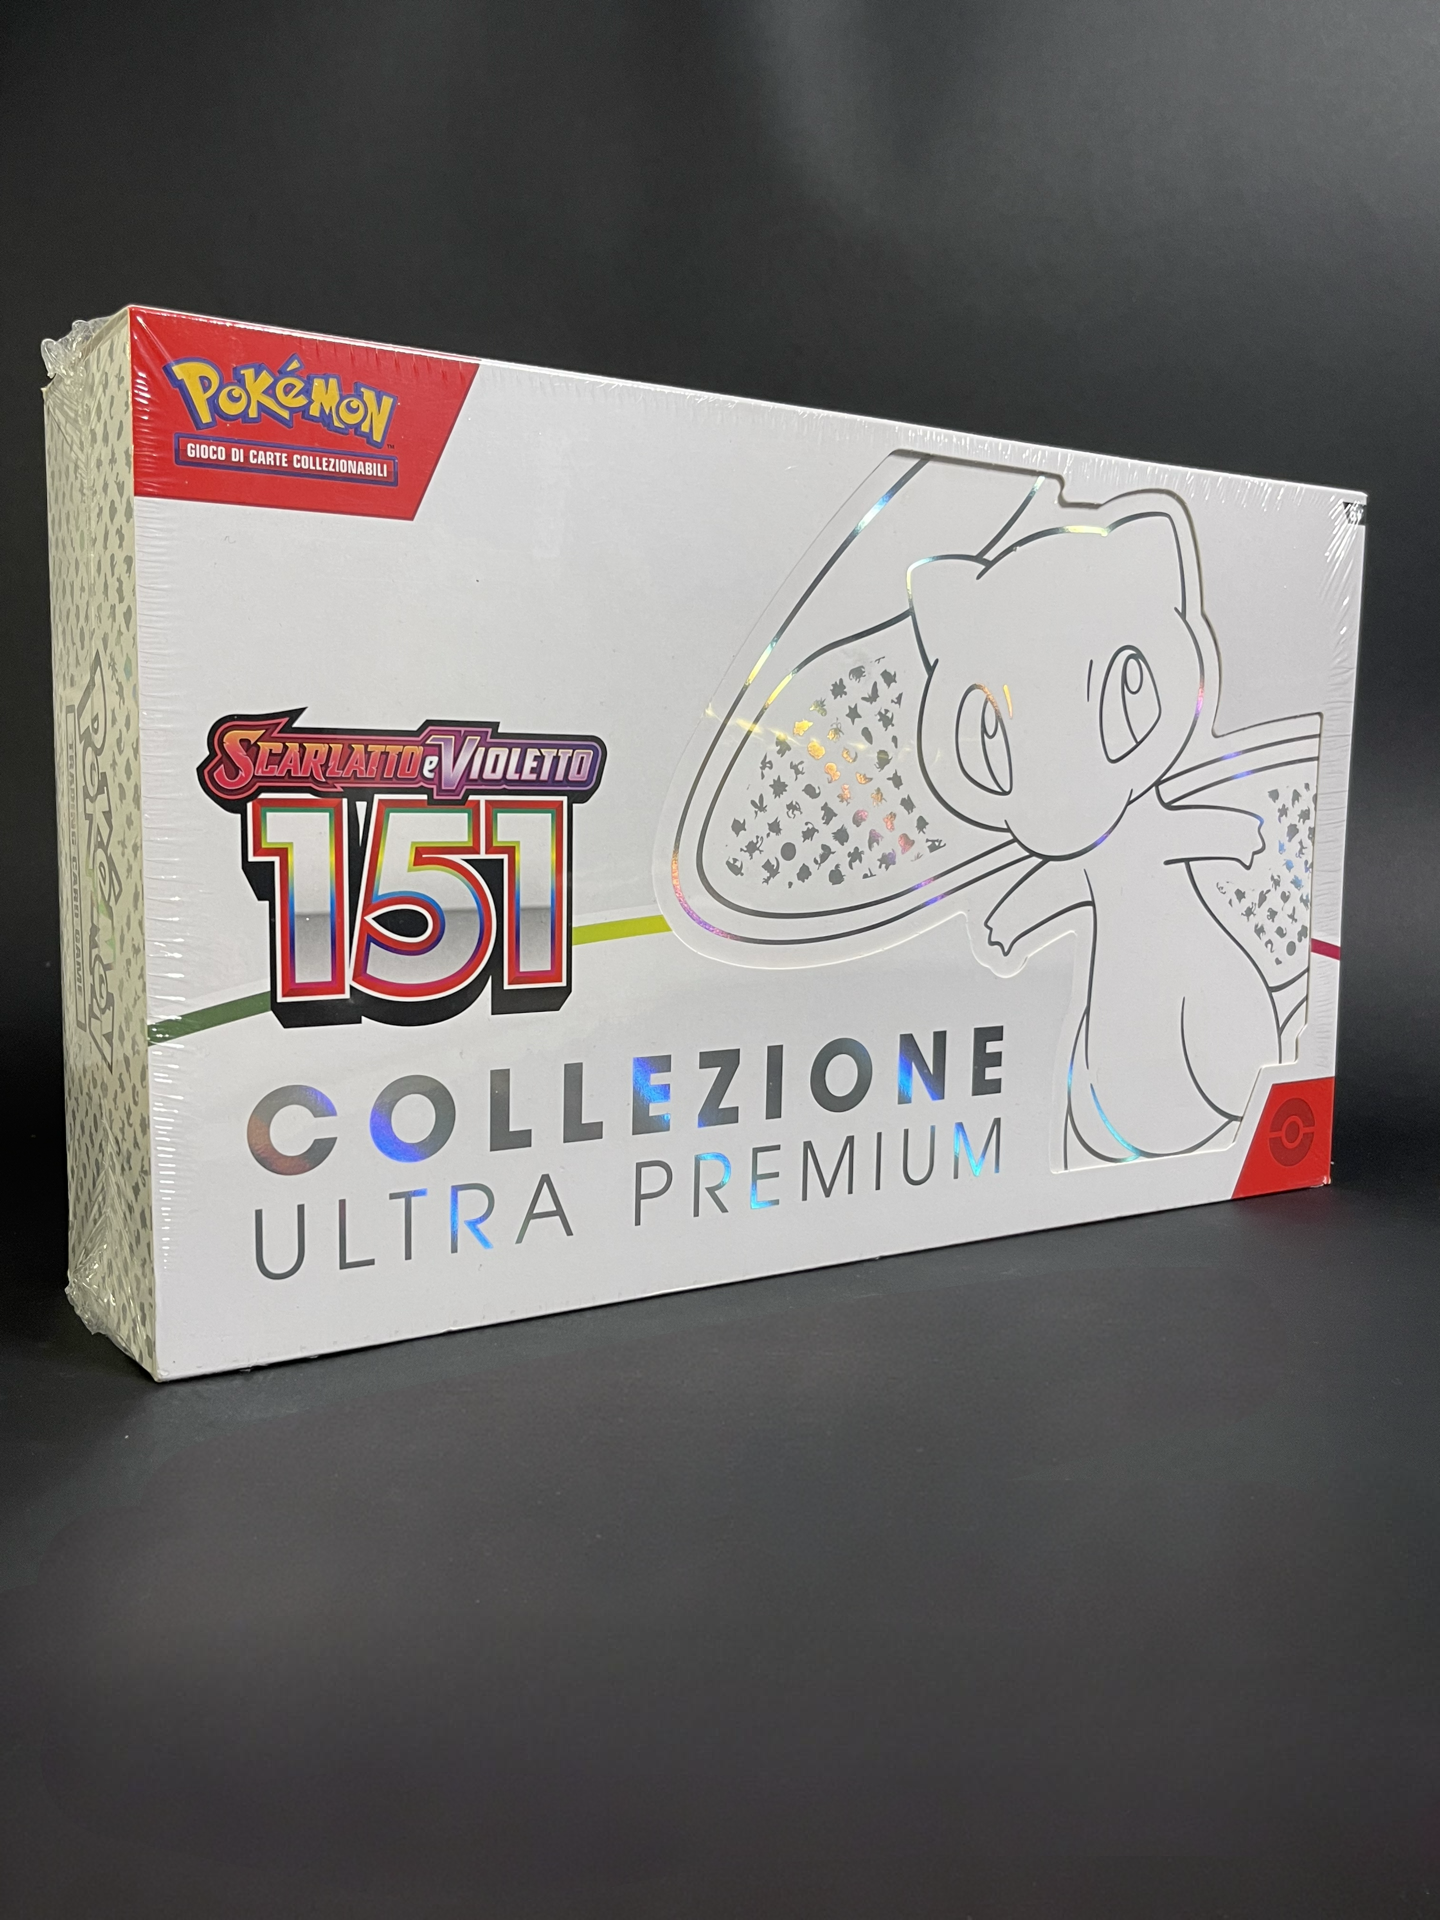 Pokémon Scarlatto e Violetto 151 Collezione Ultra Premium